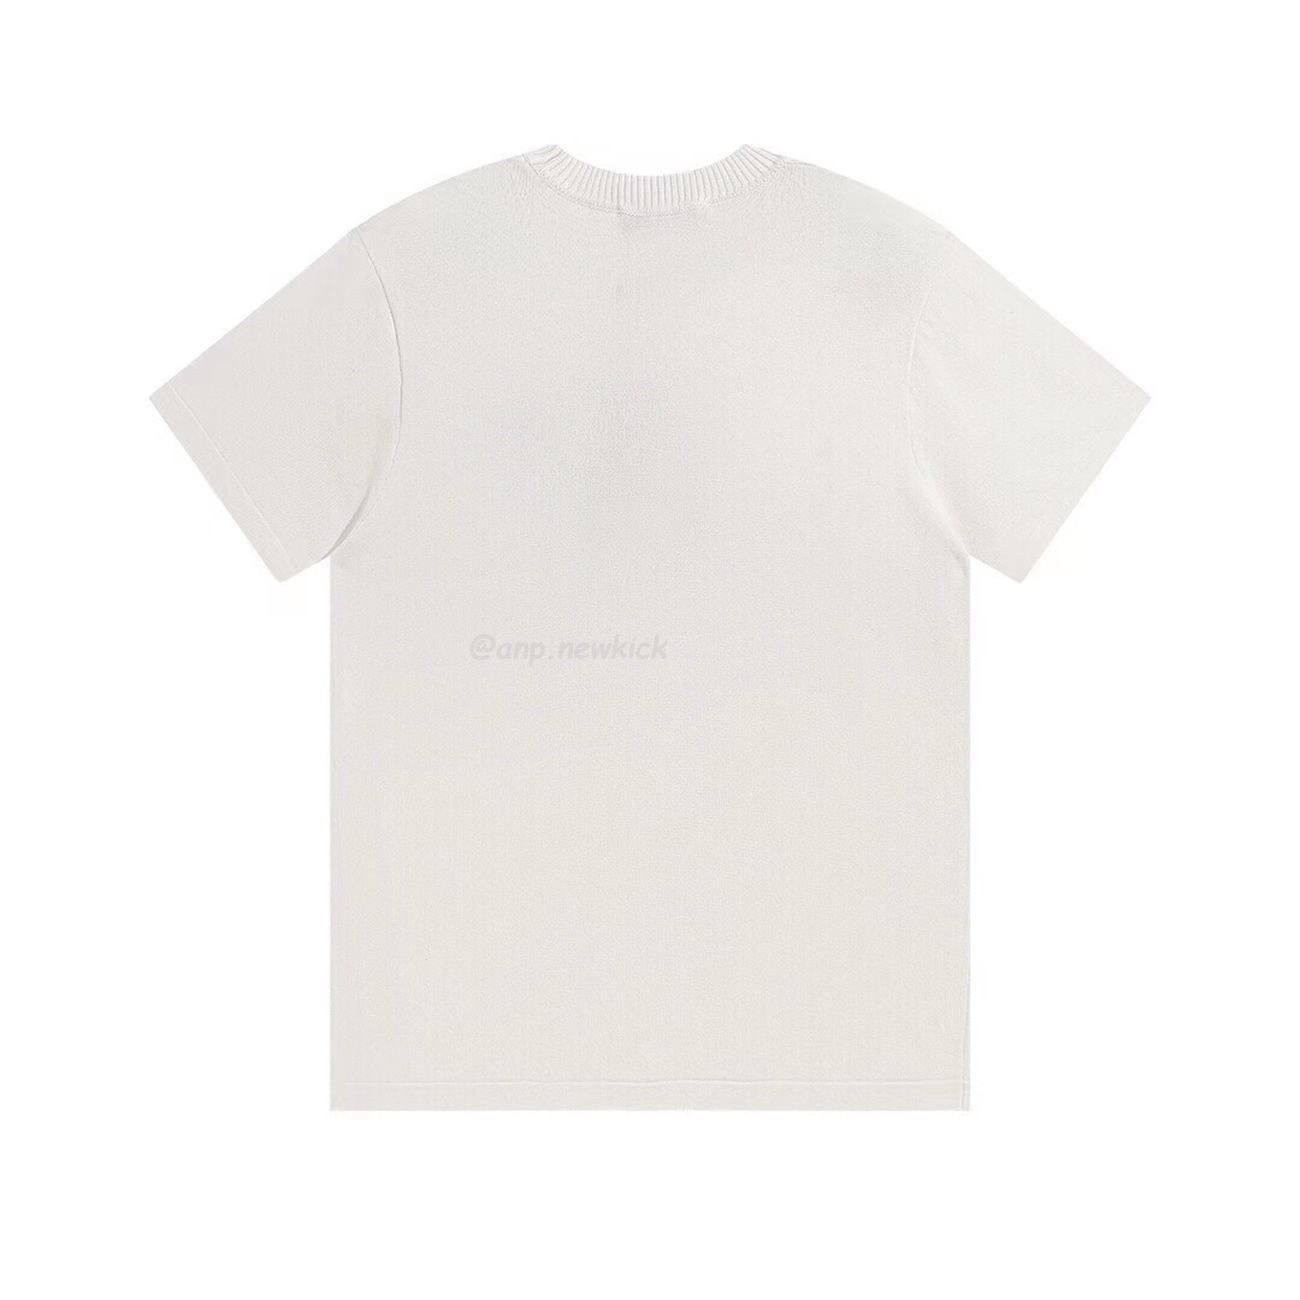 Louis Vuitton Signature Short Sleeved T Shirt (6) - newkick.org